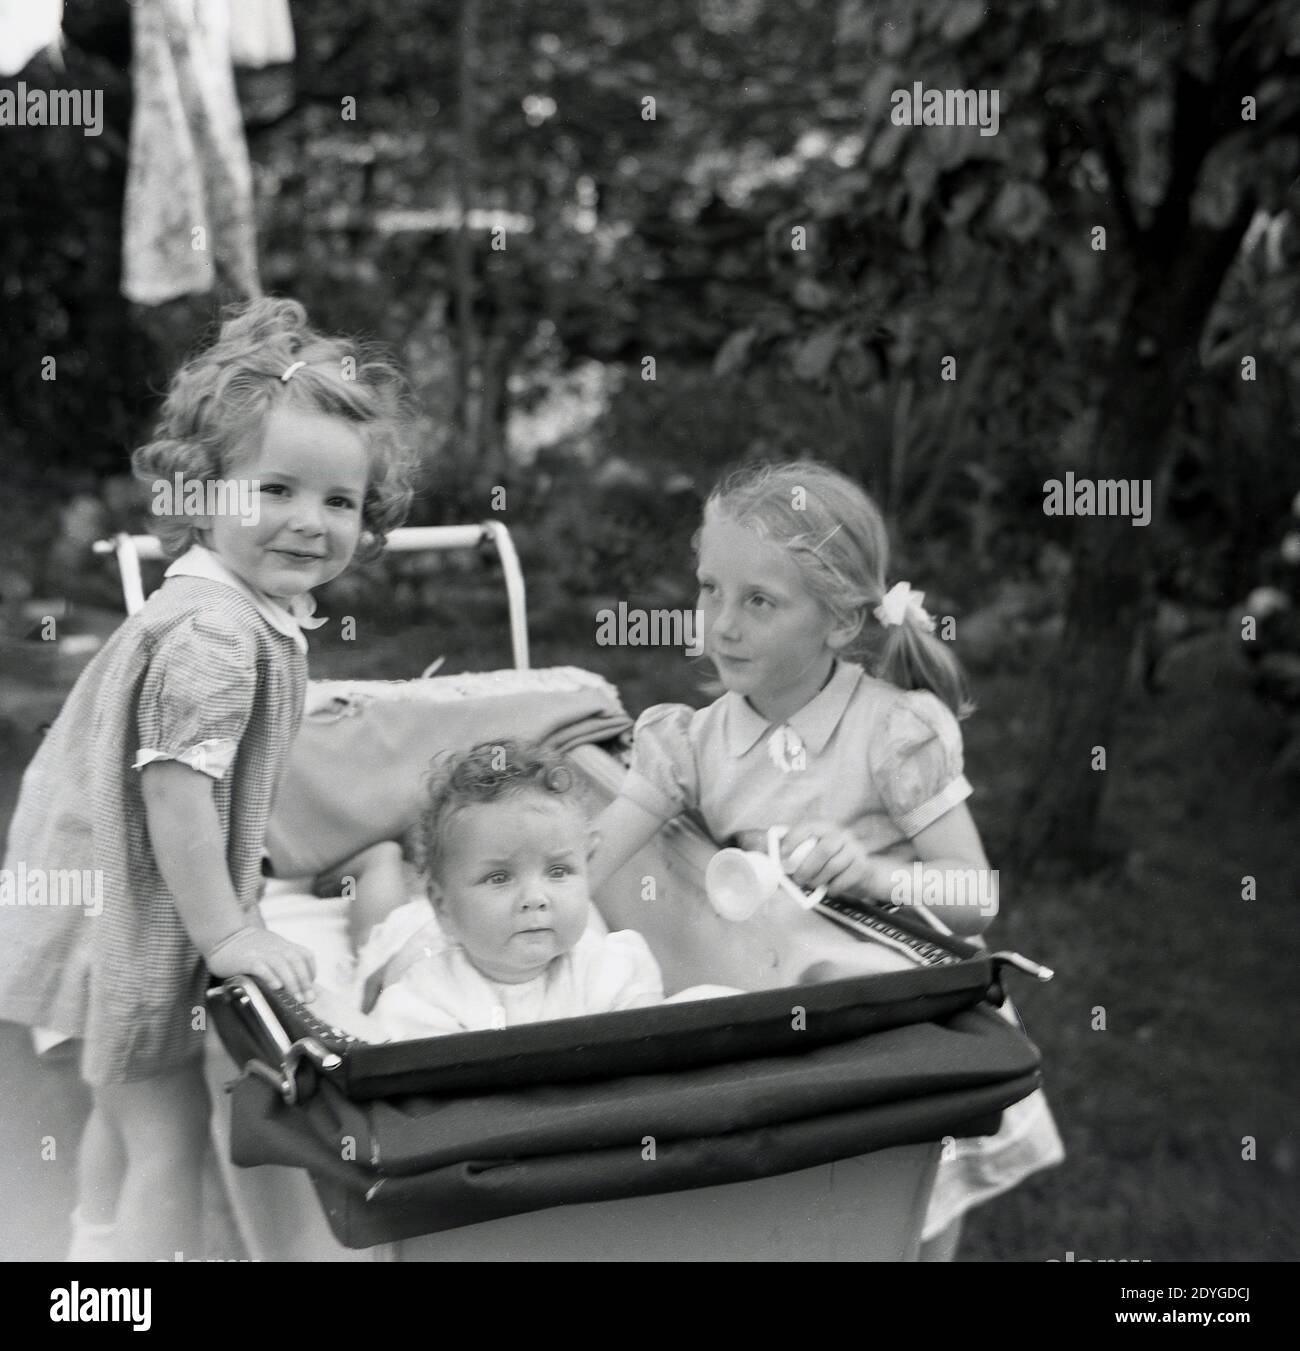 Années 1950, historique, l'été et à l'extérieur dans un jardin, deux petites filles douces, sœurs, debout à côté d'un entraîneur-construit pram ou de la voiture de bébé de l'époque, avec l'une de la fille debout sur la roue et l'autre avec sa main sur leur bébé frère couché dans le pram, Angleterre, Royaume-Uni. Banque D'Images